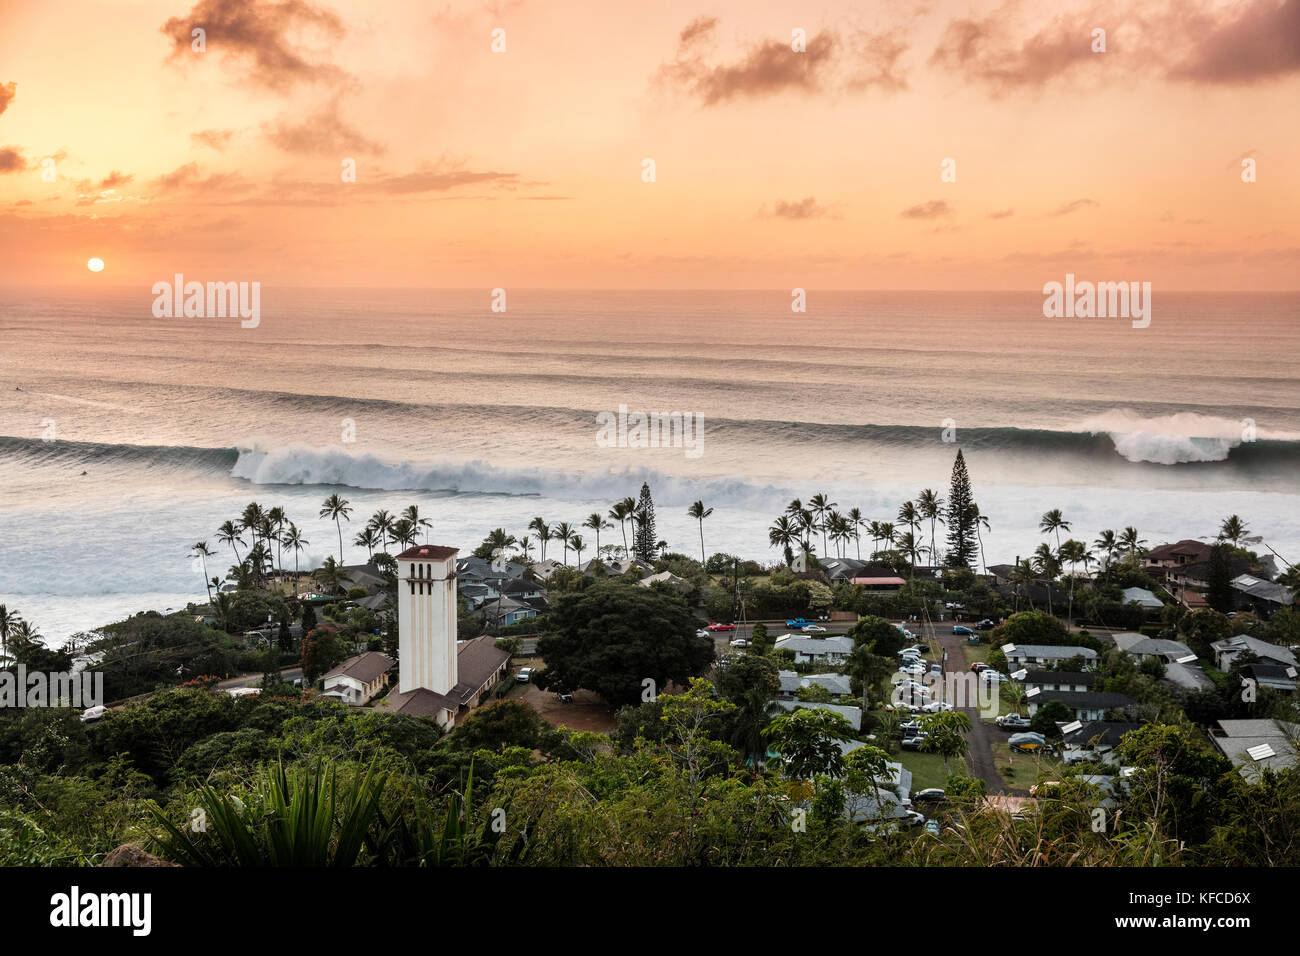 Hawaii, Oahu, côte-nord, eddie aikau, 2016, forte houle vu de dessus Waimea Bay au coucher du soleil Banque D'Images